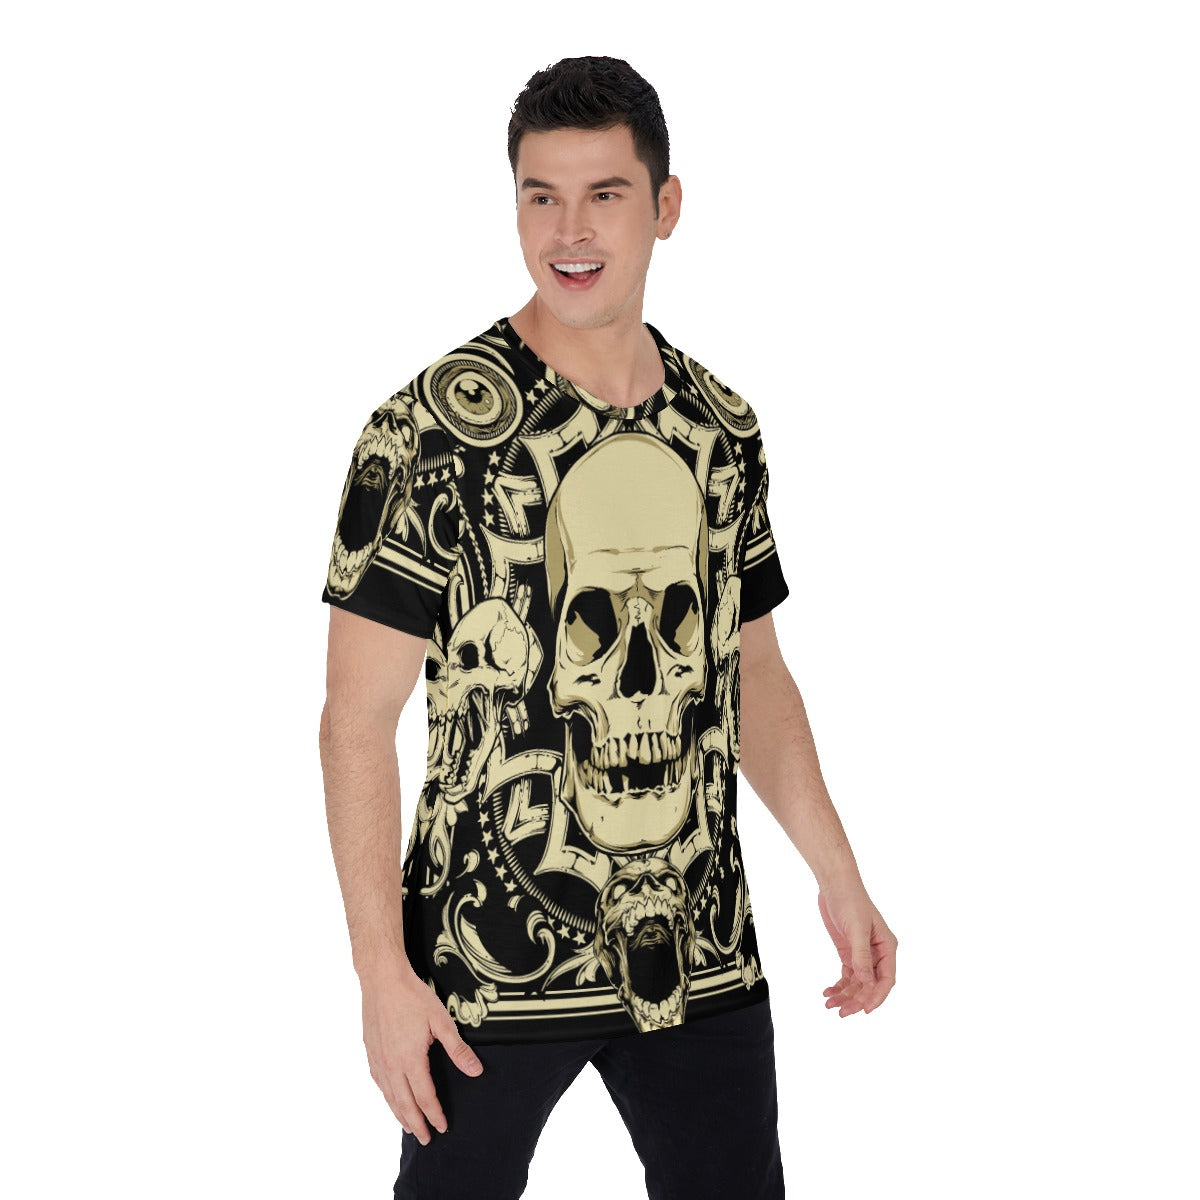 Gothic Skull Men's O-Neck T-Shirt, Halloween skeleton T-shirt, Halloween costume